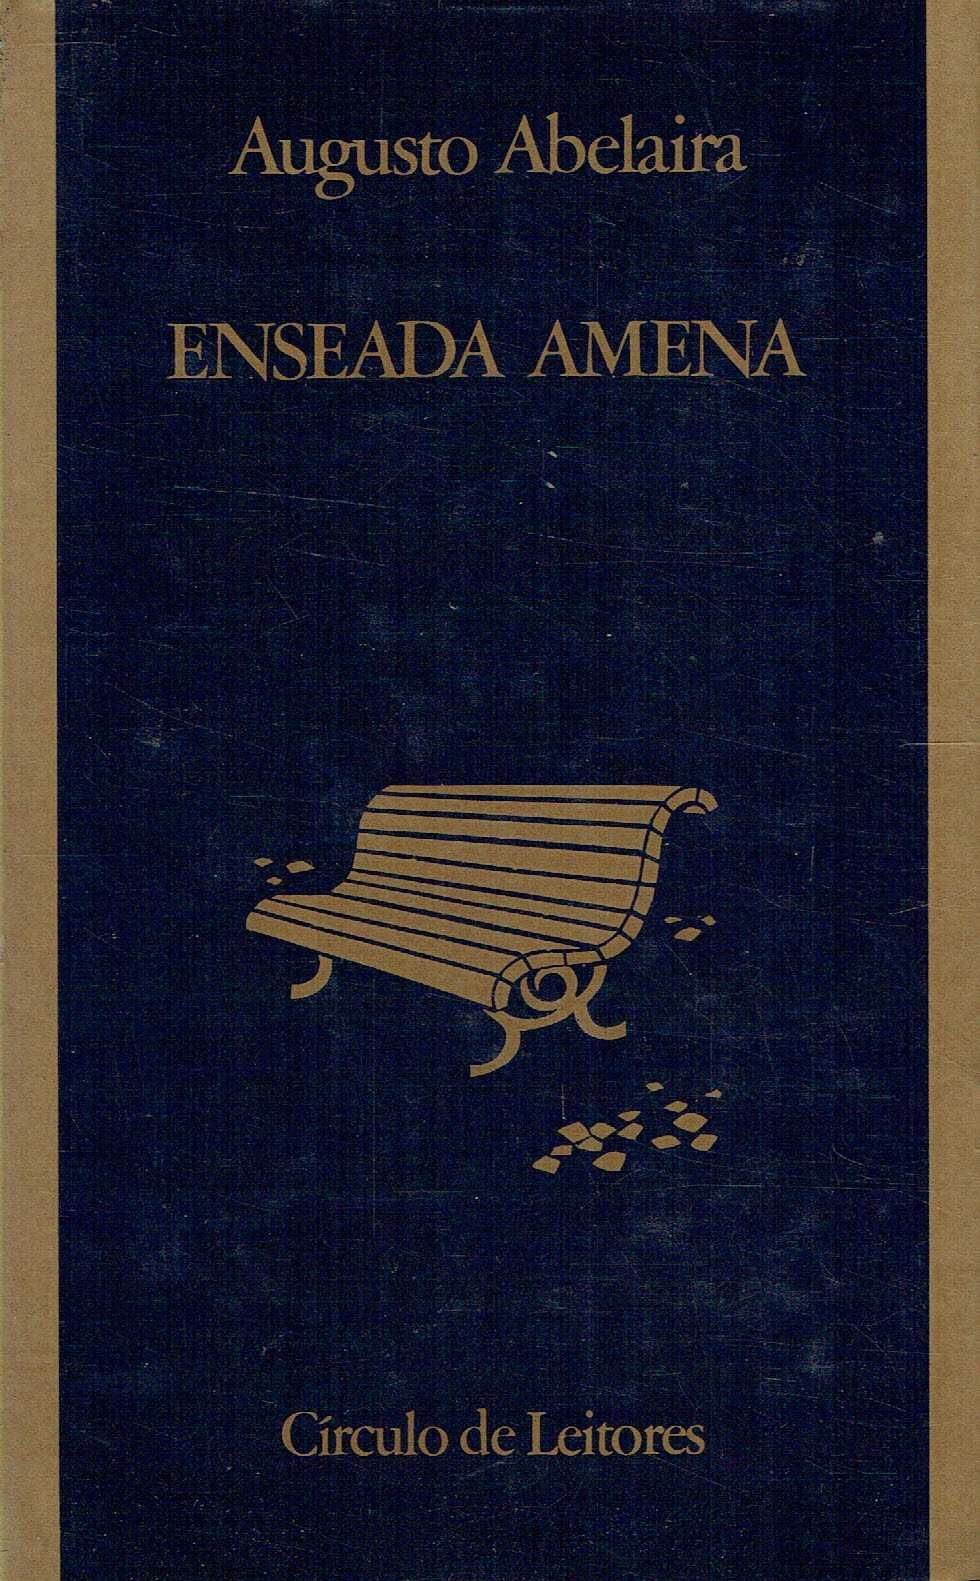 3916 - Livros de Augusto Abelaira